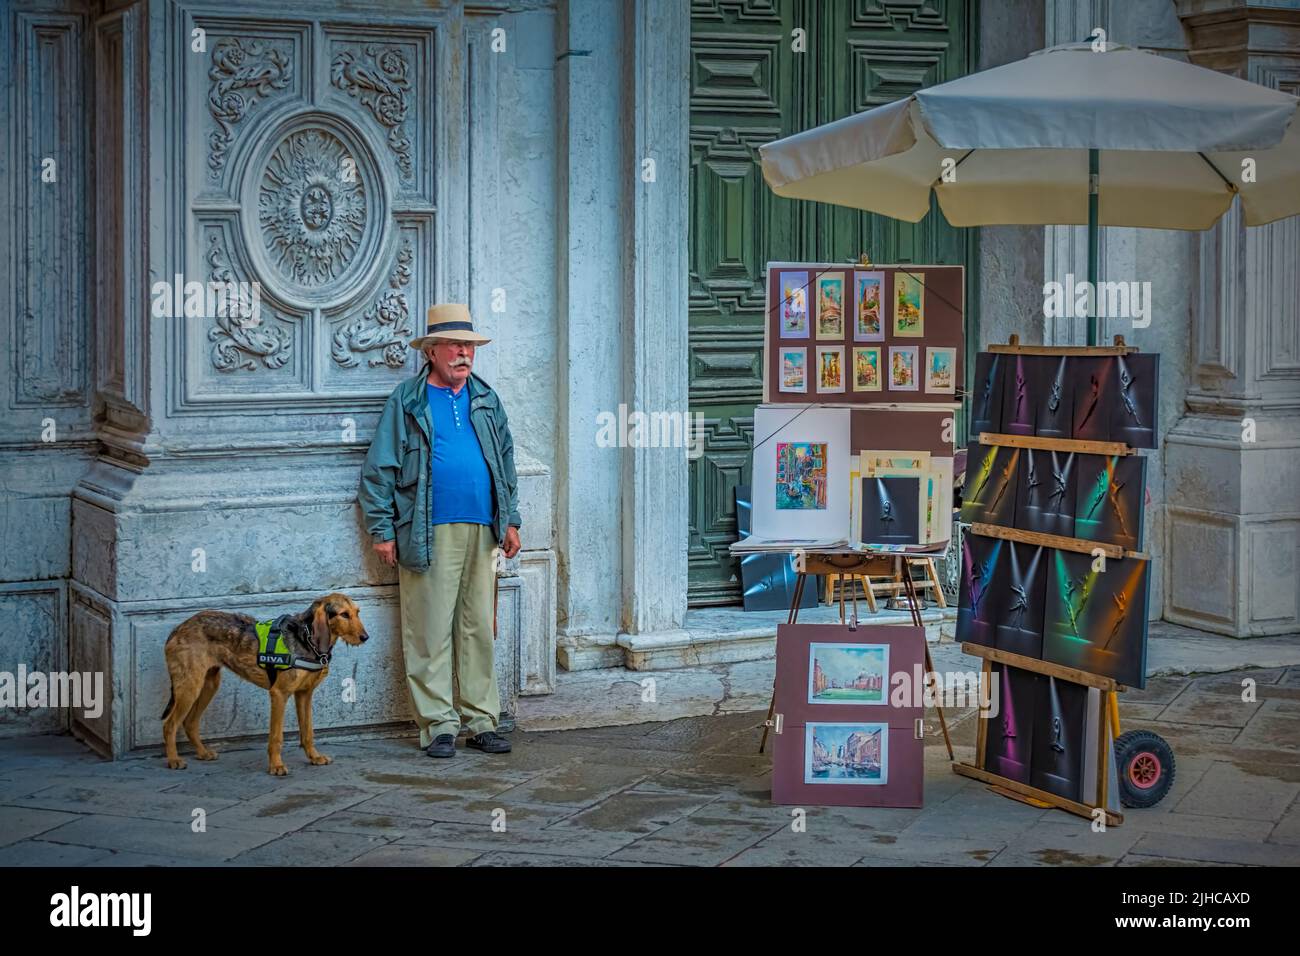 Artiste de rue vendant ses peintures dans les rues de Venise, Italie Banque D'Images